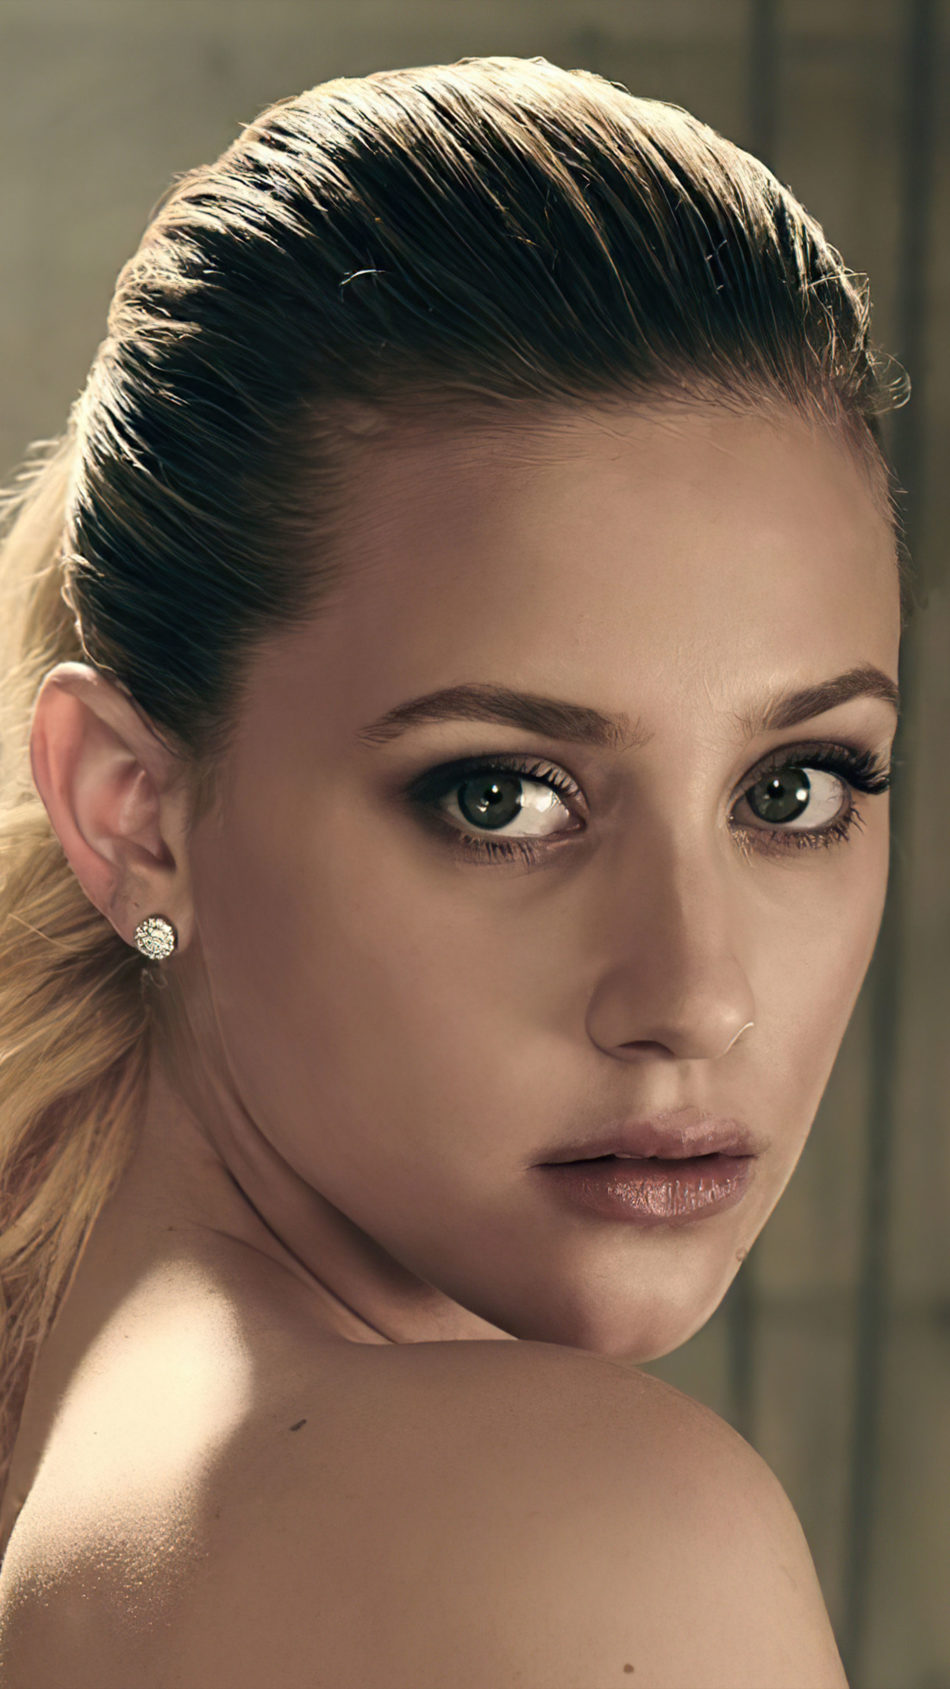 Beautiful Actress Lili Reinhart 2020 4K Ultra HD Mobile Wallpaper